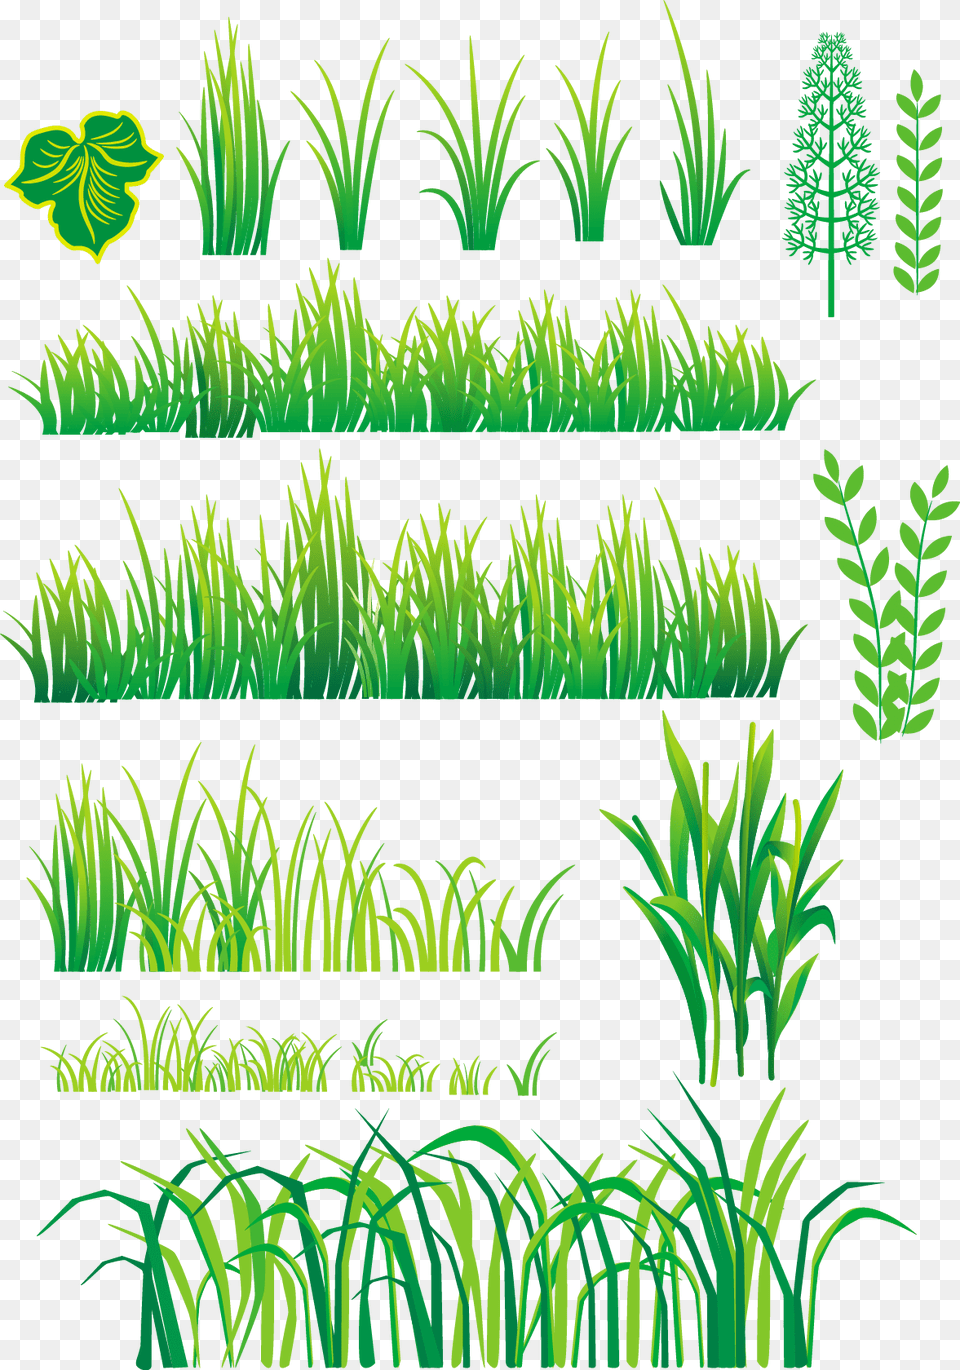 Grass Plant Vector, Green, Vegetation, Aquatic, Water Free Transparent Png